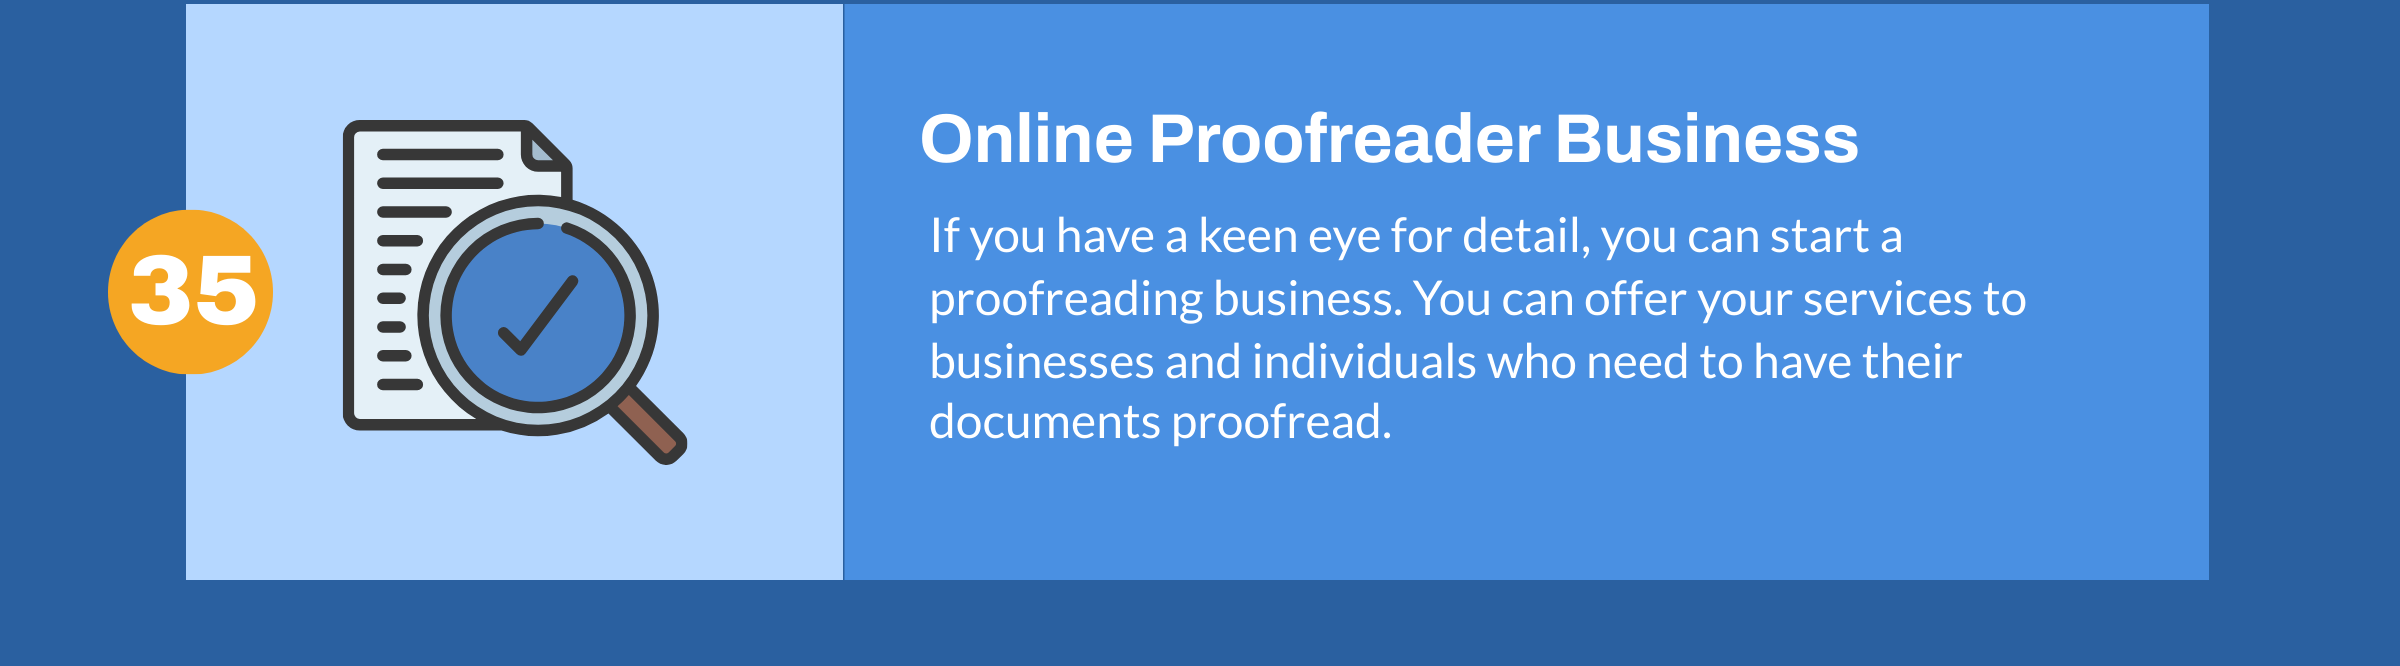 Online Proofreader Business